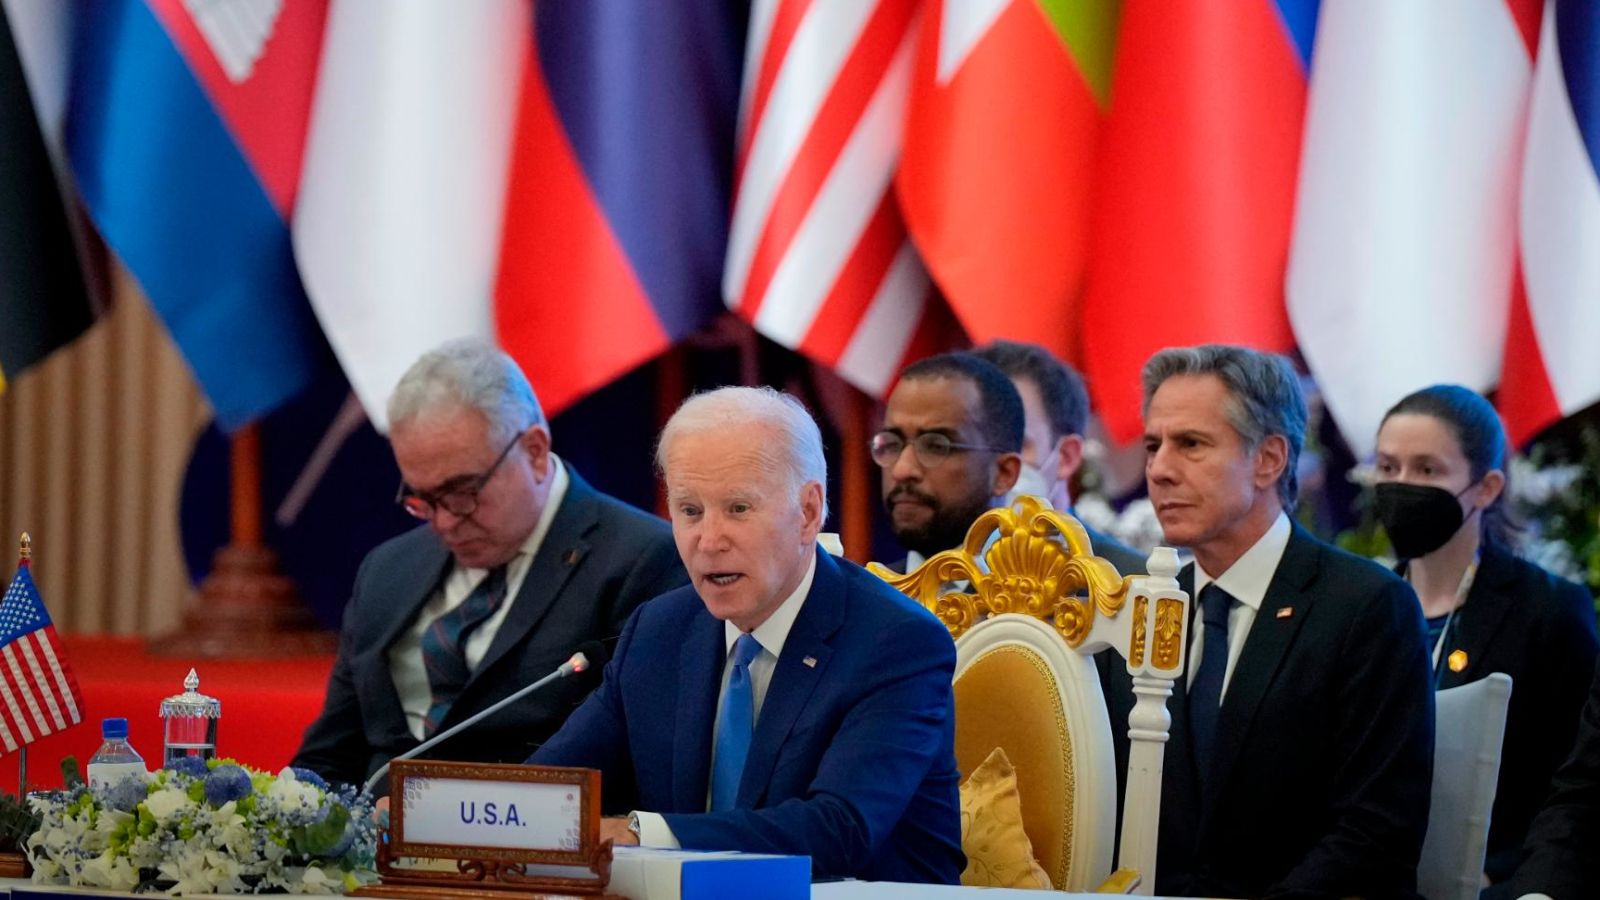 Periodista Franki Medina Diaz// Joe Biden llega a Camboya buscando contrarrestar la creciente influencia de China en el sudeste asiático